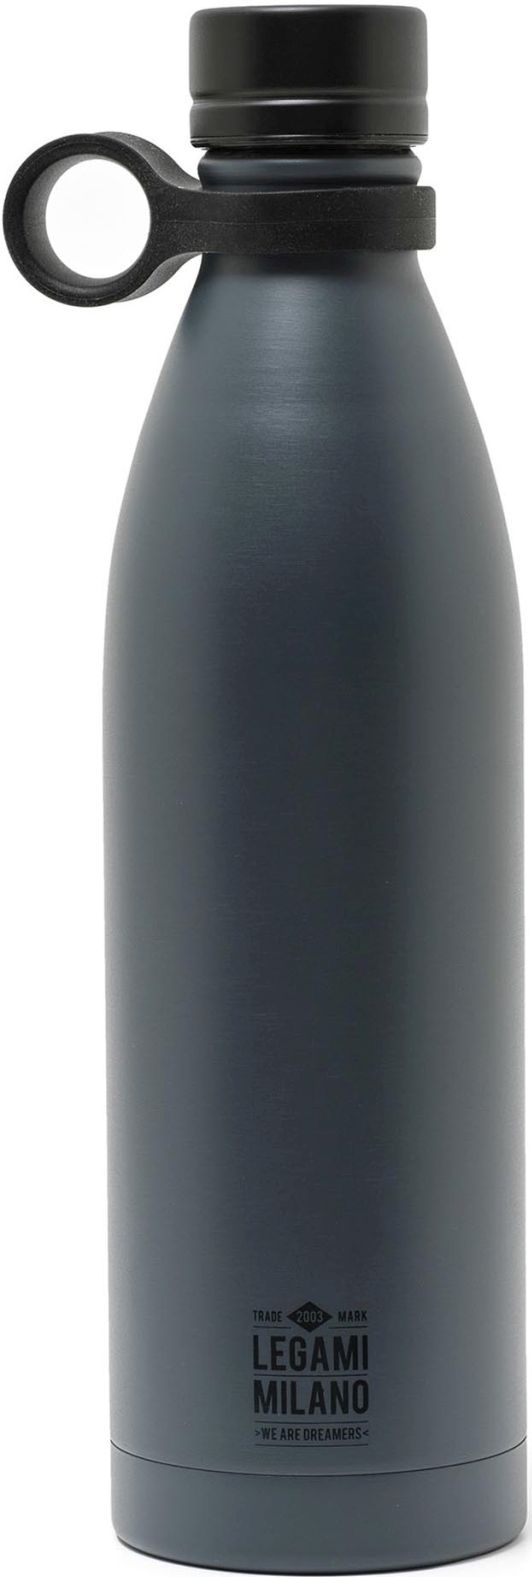 Legami Hot&Cold - Vacuum Bottle - 800 ml - Black